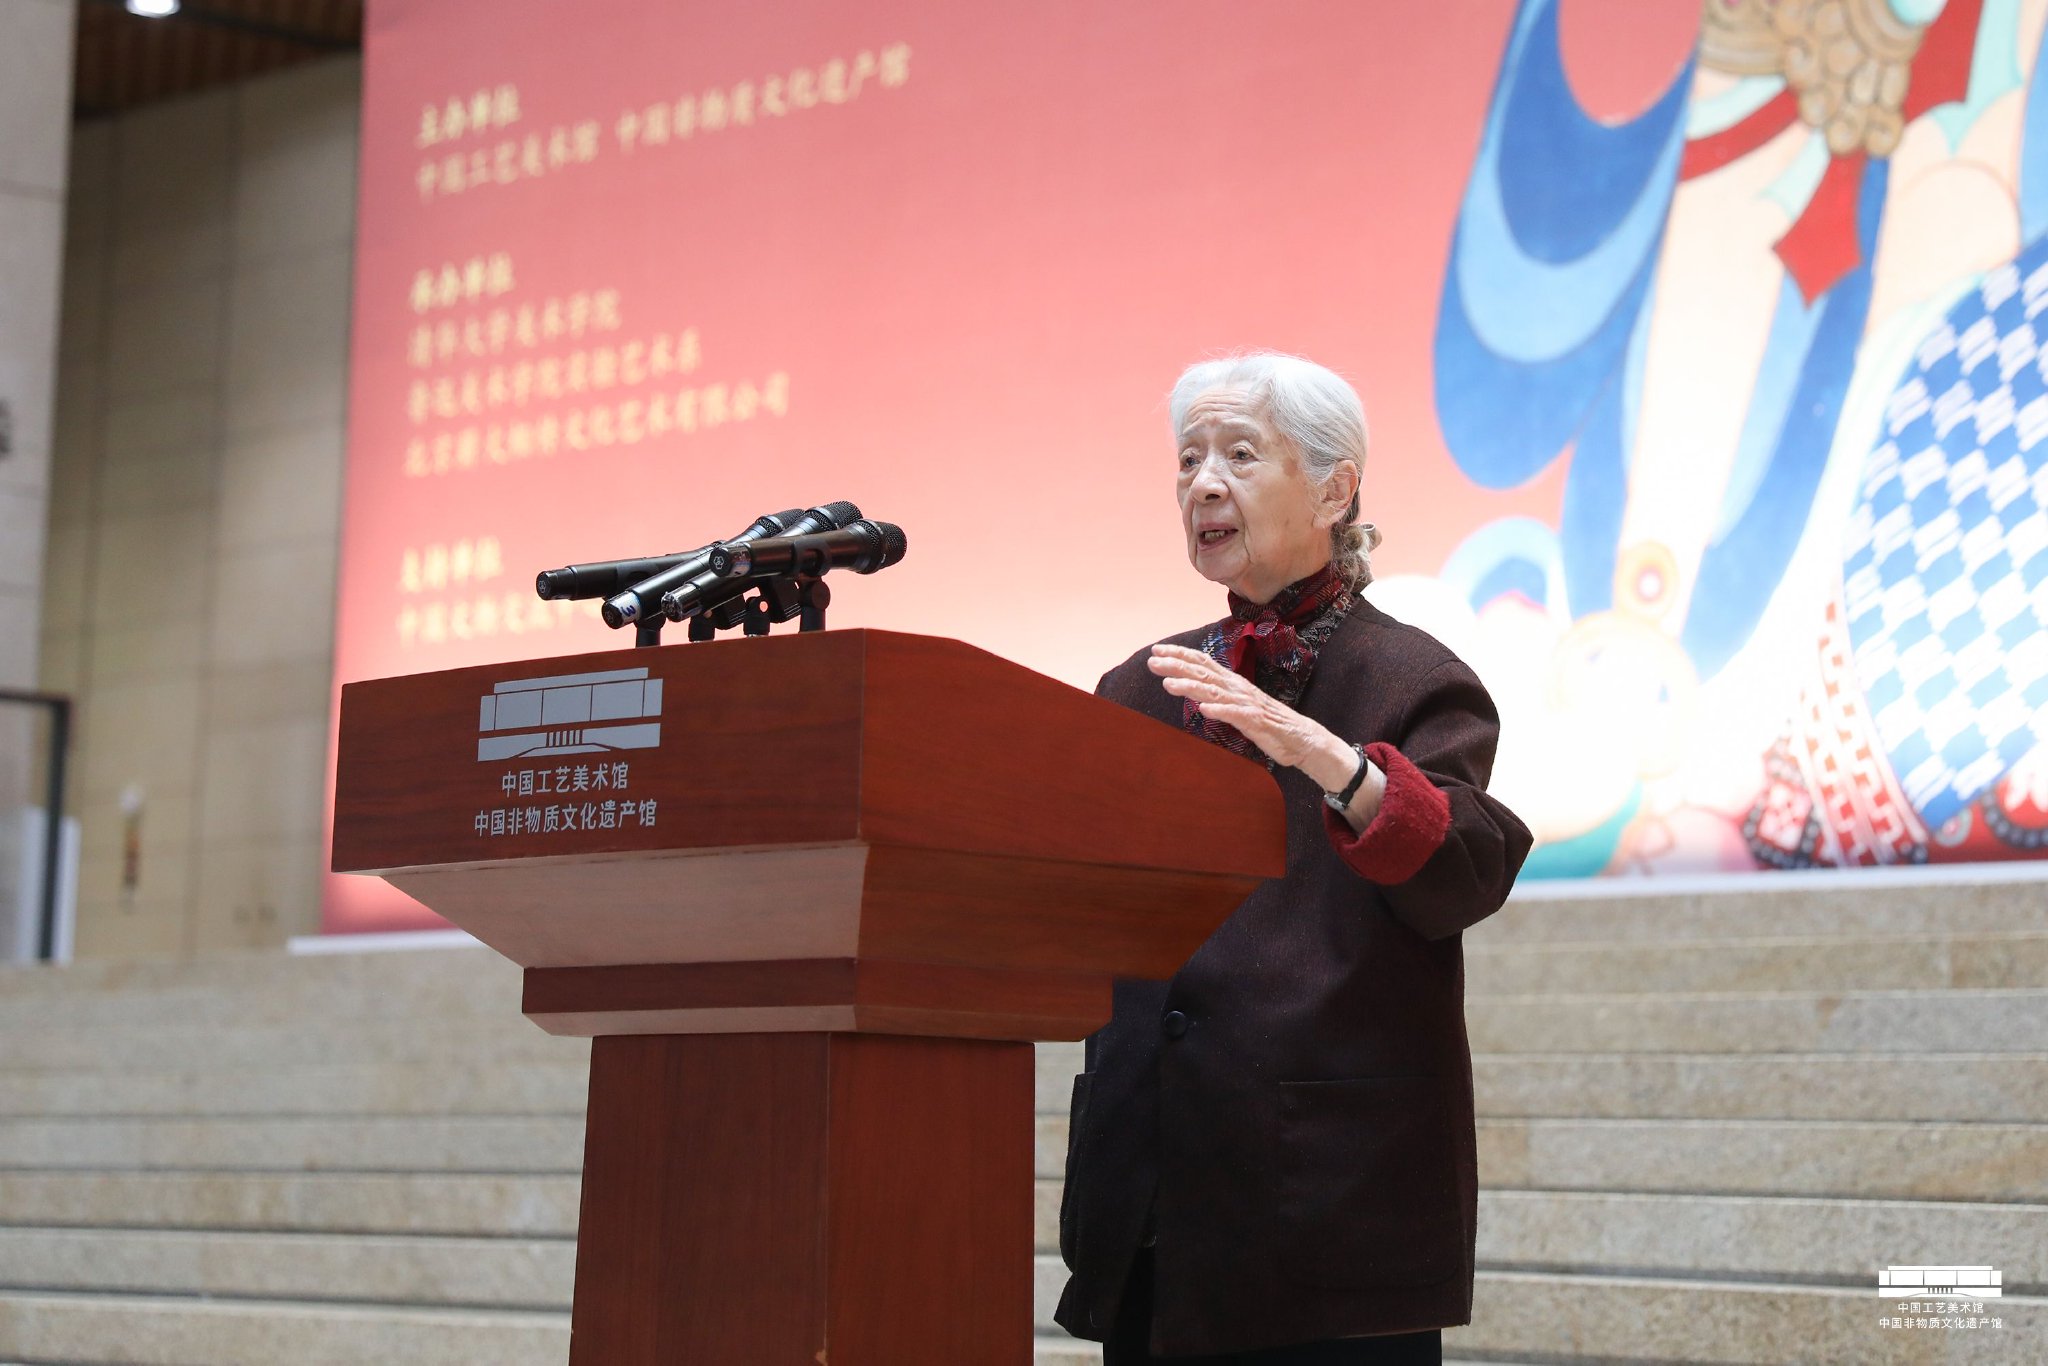 常沙娜在展覽開幕禮上發言。供圖 中國工藝美術館 中國非物質文化遺產館